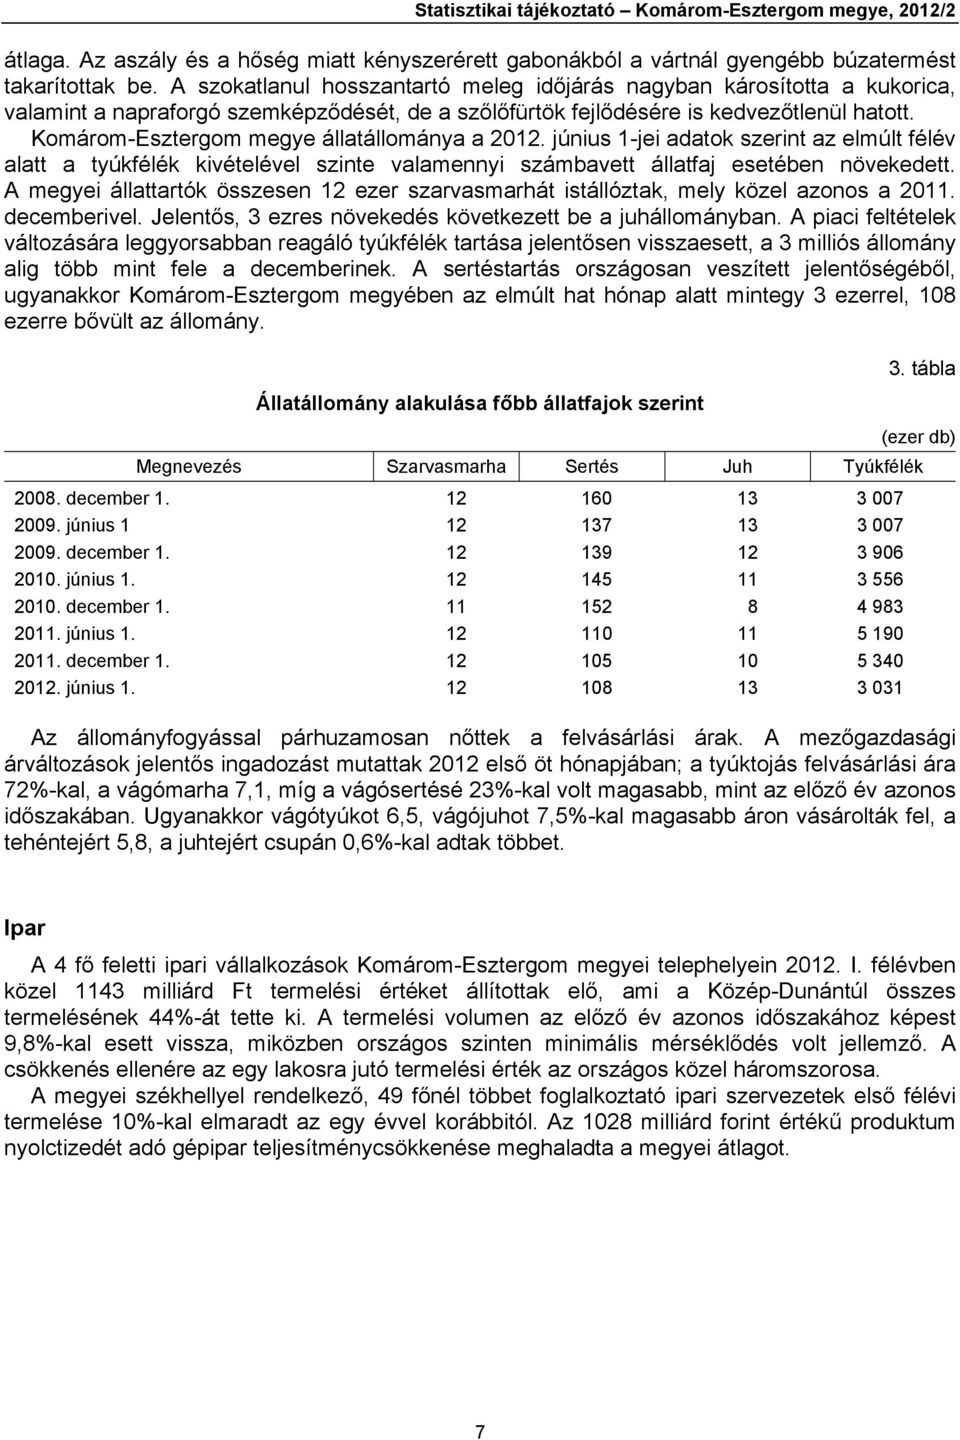 Komárom-Esztergom megye állatállománya a 2012. június 1-jei adatok szerint az elmúlt félév alatt a tyúkfélék kivételével szinte valamennyi számbavett állatfaj esetében növekedett.